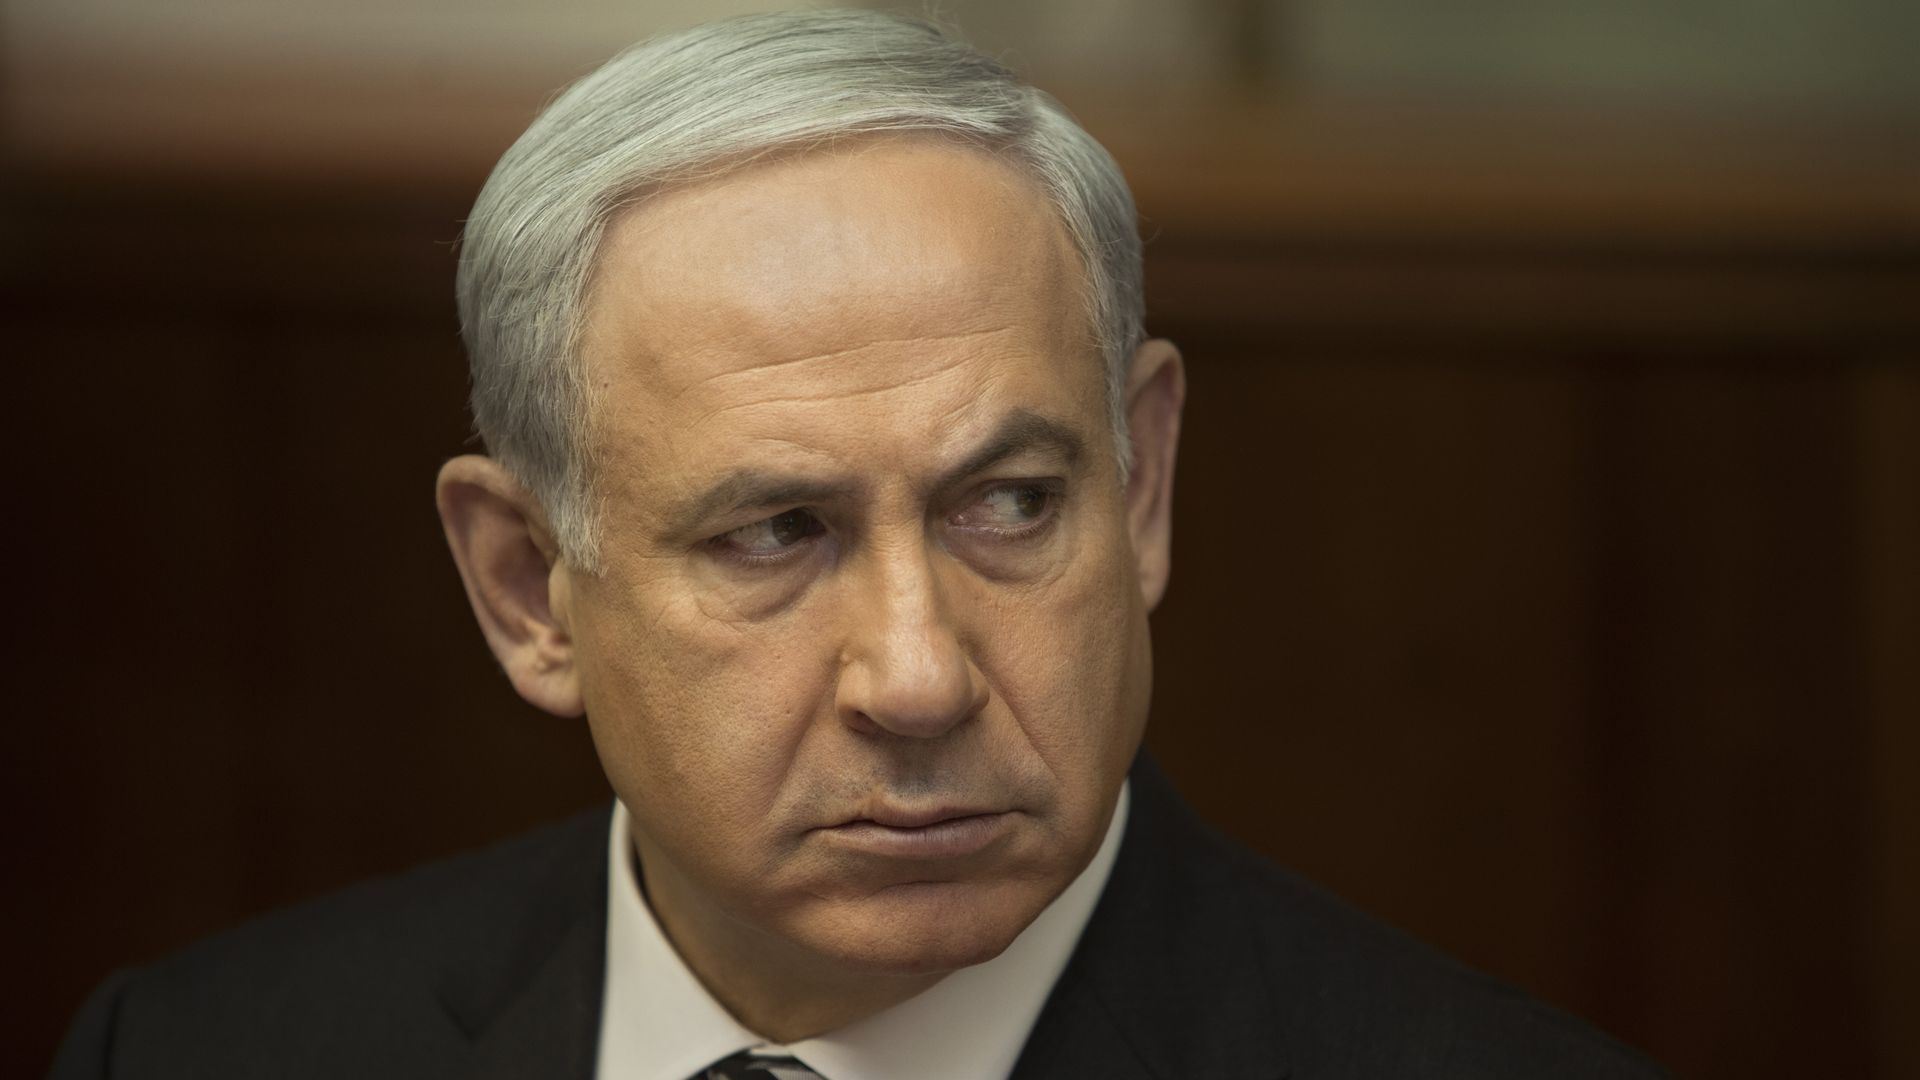  Israel's Prime Minister Benjamin Netanyahu